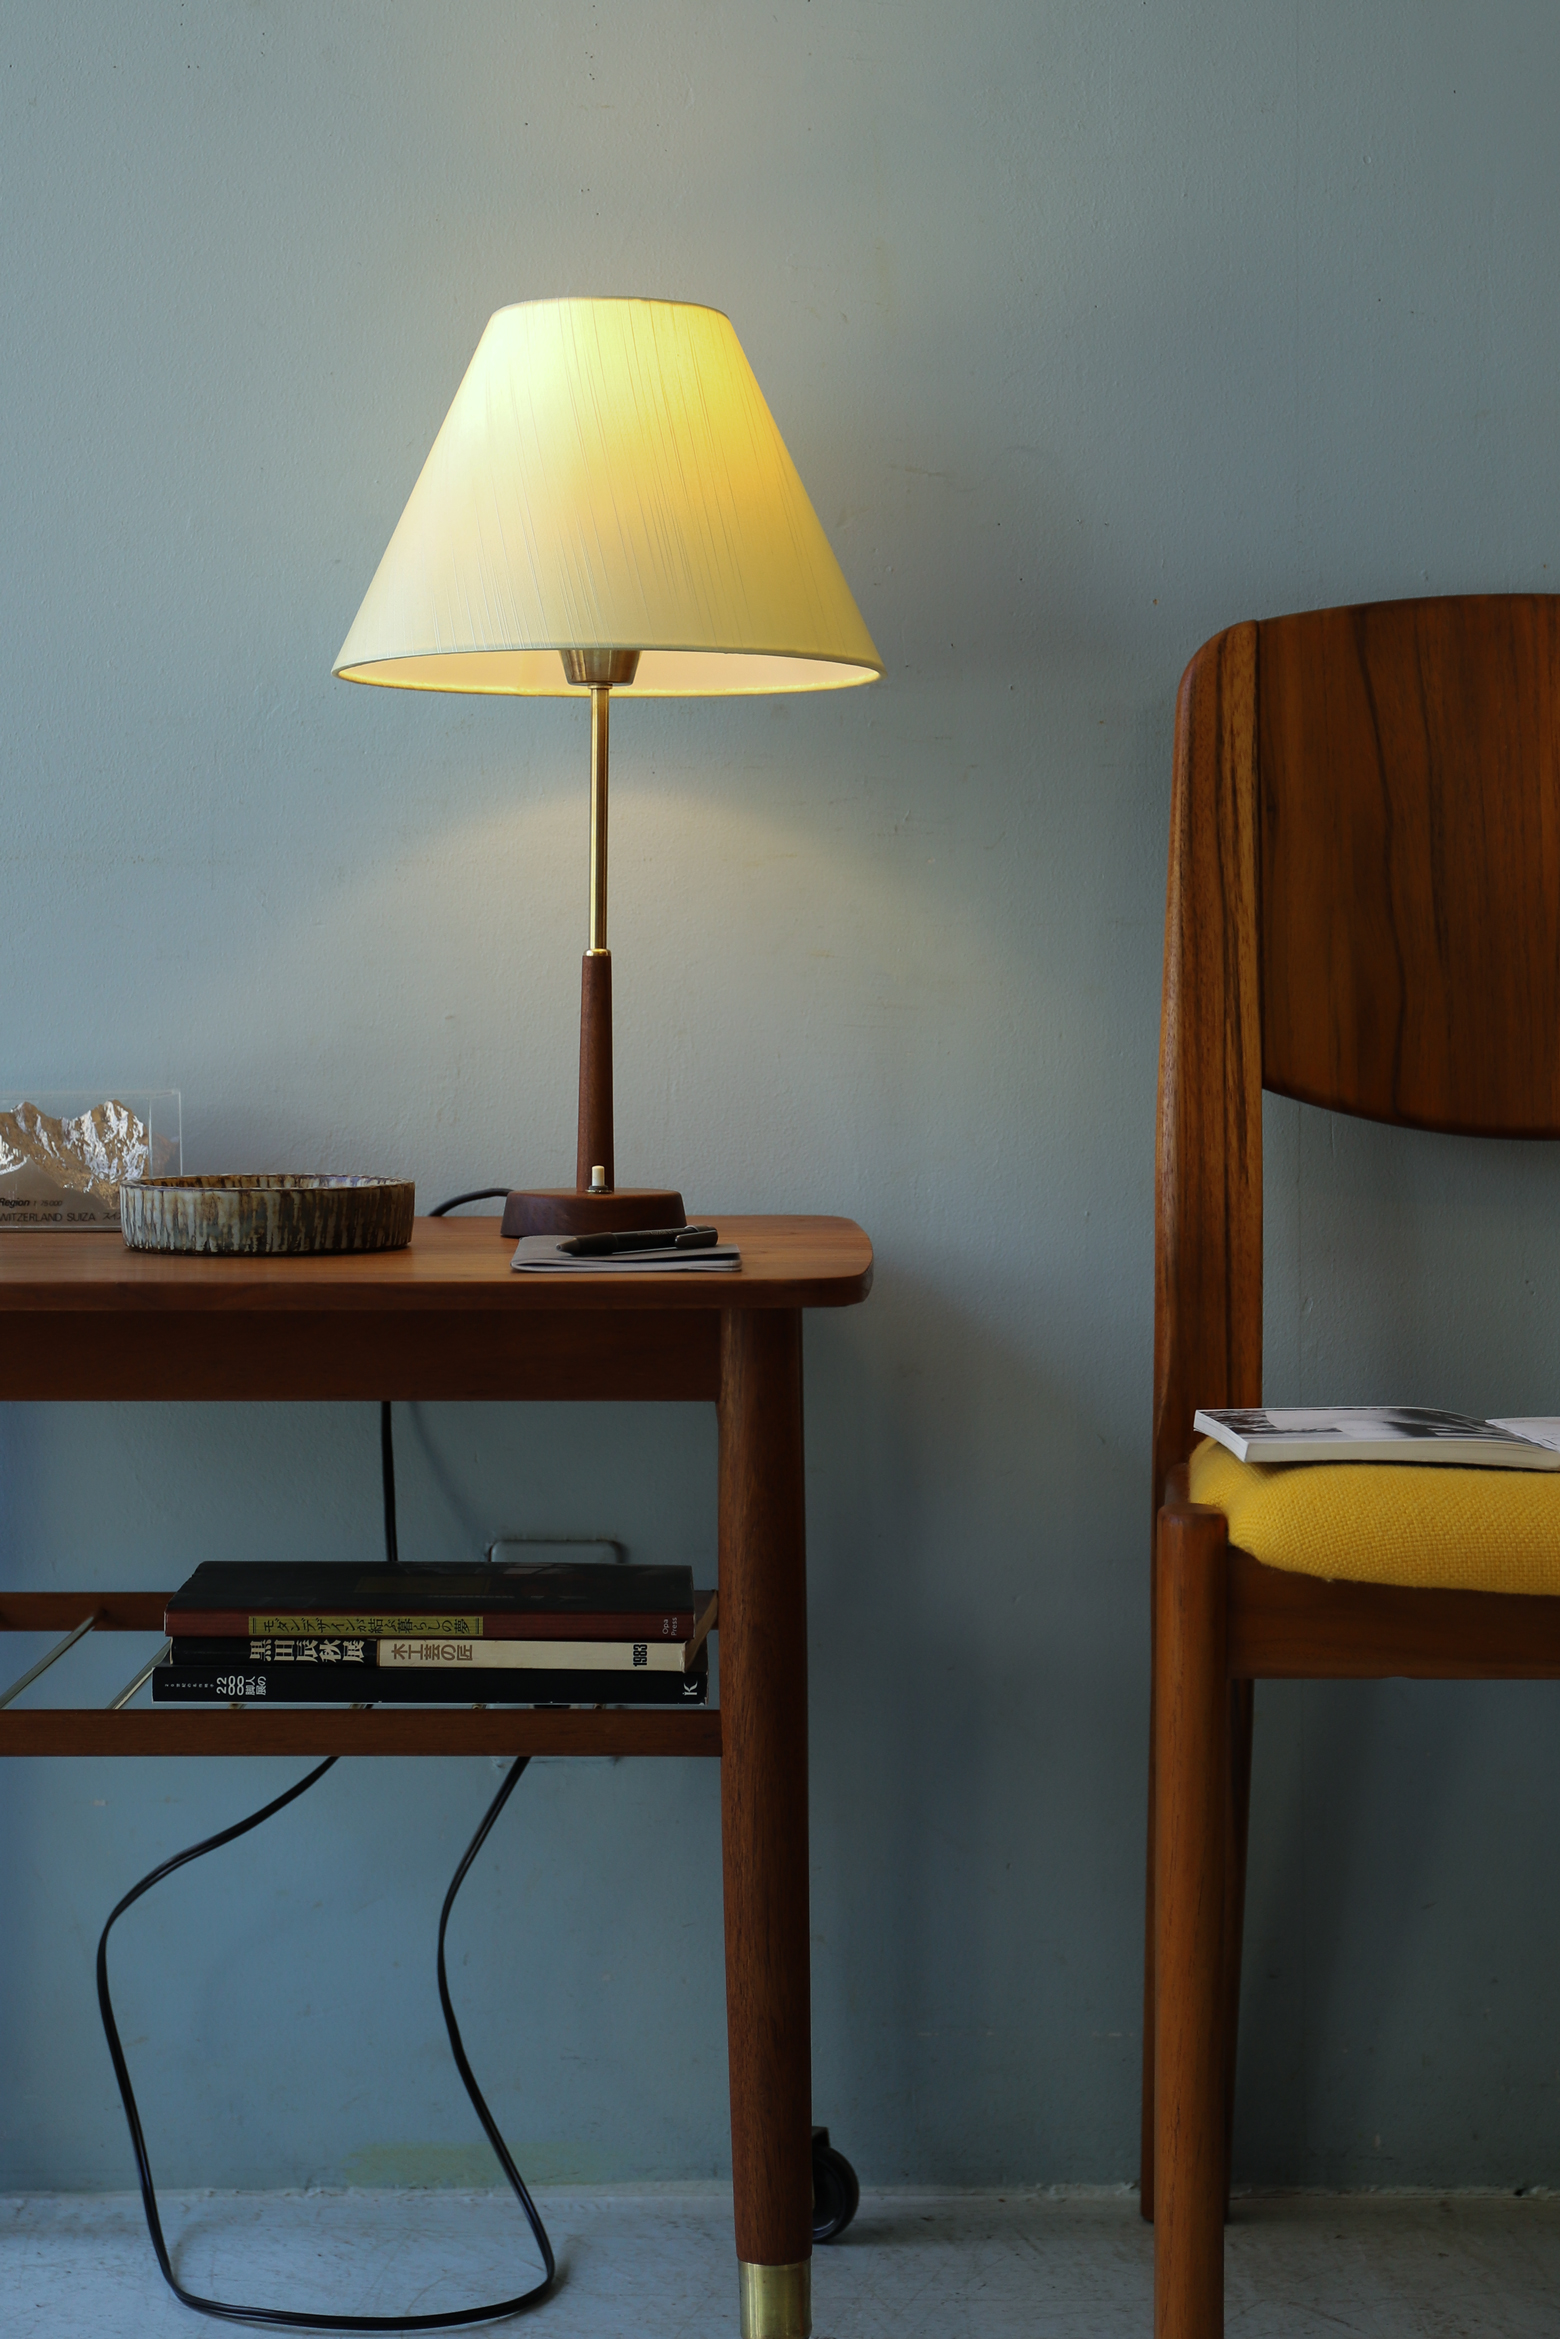 Swedish Vintage Table Lamp Midcentury Modern/スウェーデンヴィンテージ テーブルランプ 間接照明 インテリア ミッドセンチュリー 北欧デザイン